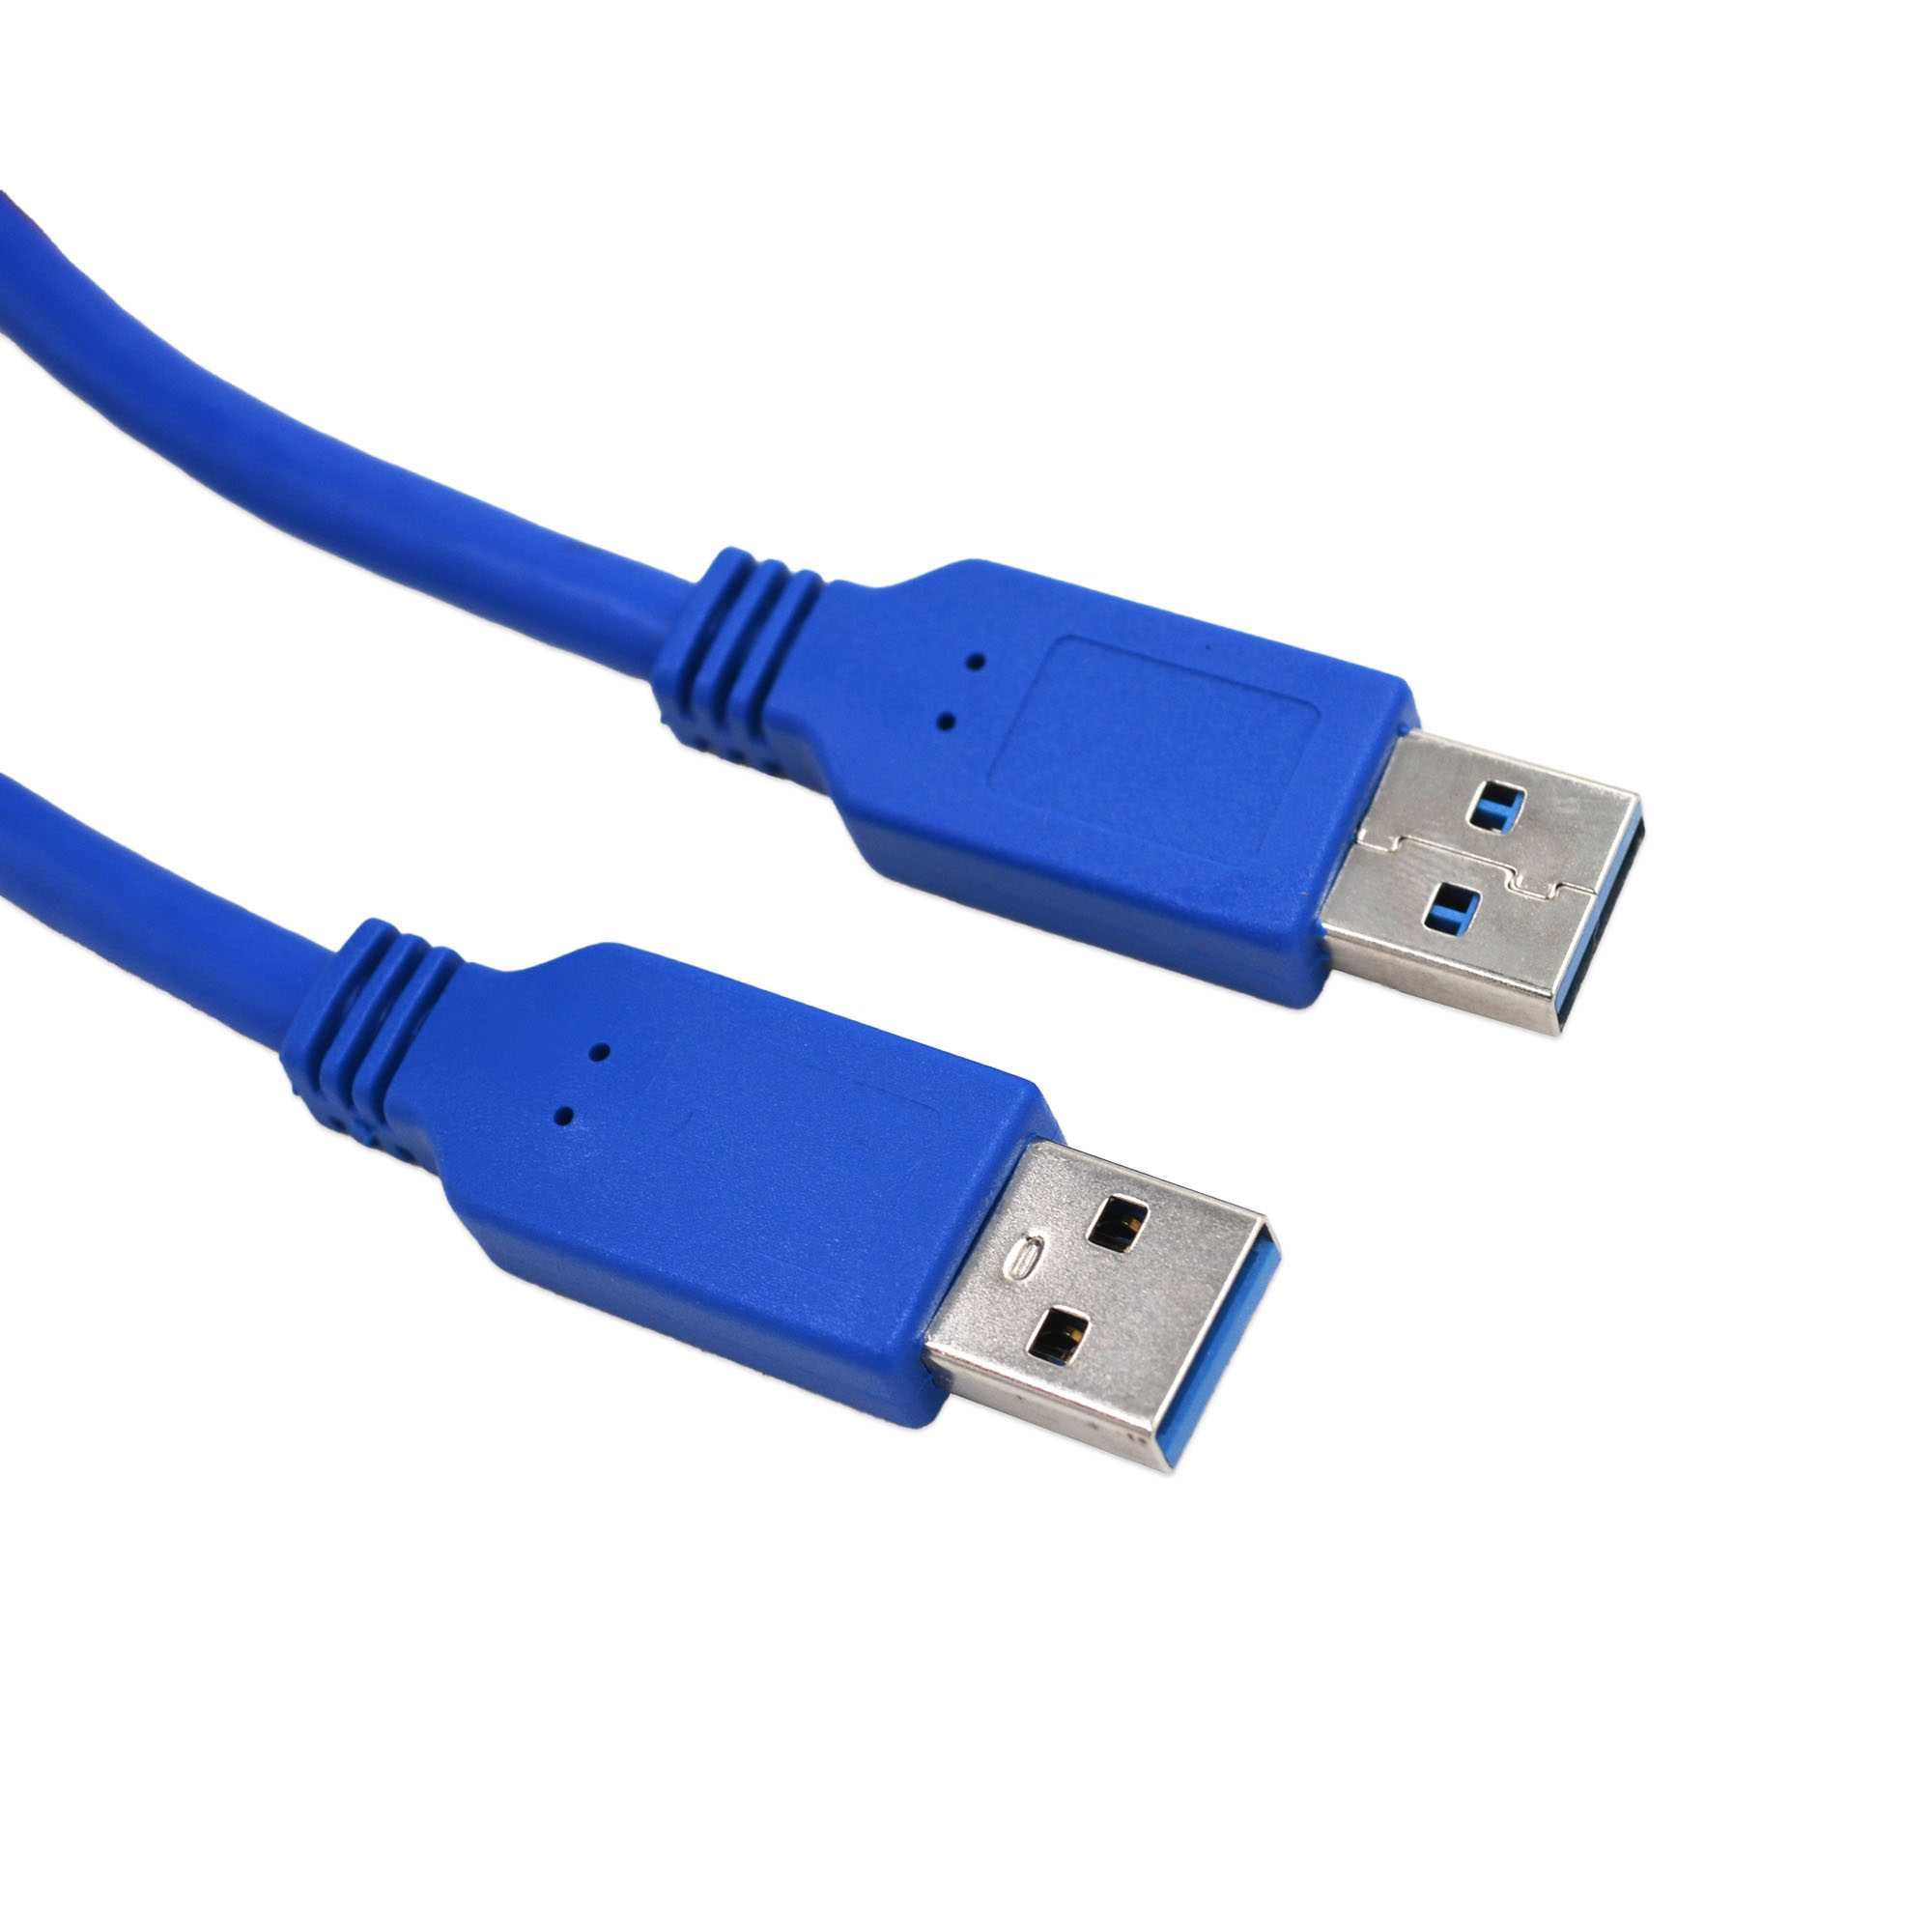 Кабель USB 3.0 AM - USB 3.0 AM, 0.6 м, синий новый в упаковке.